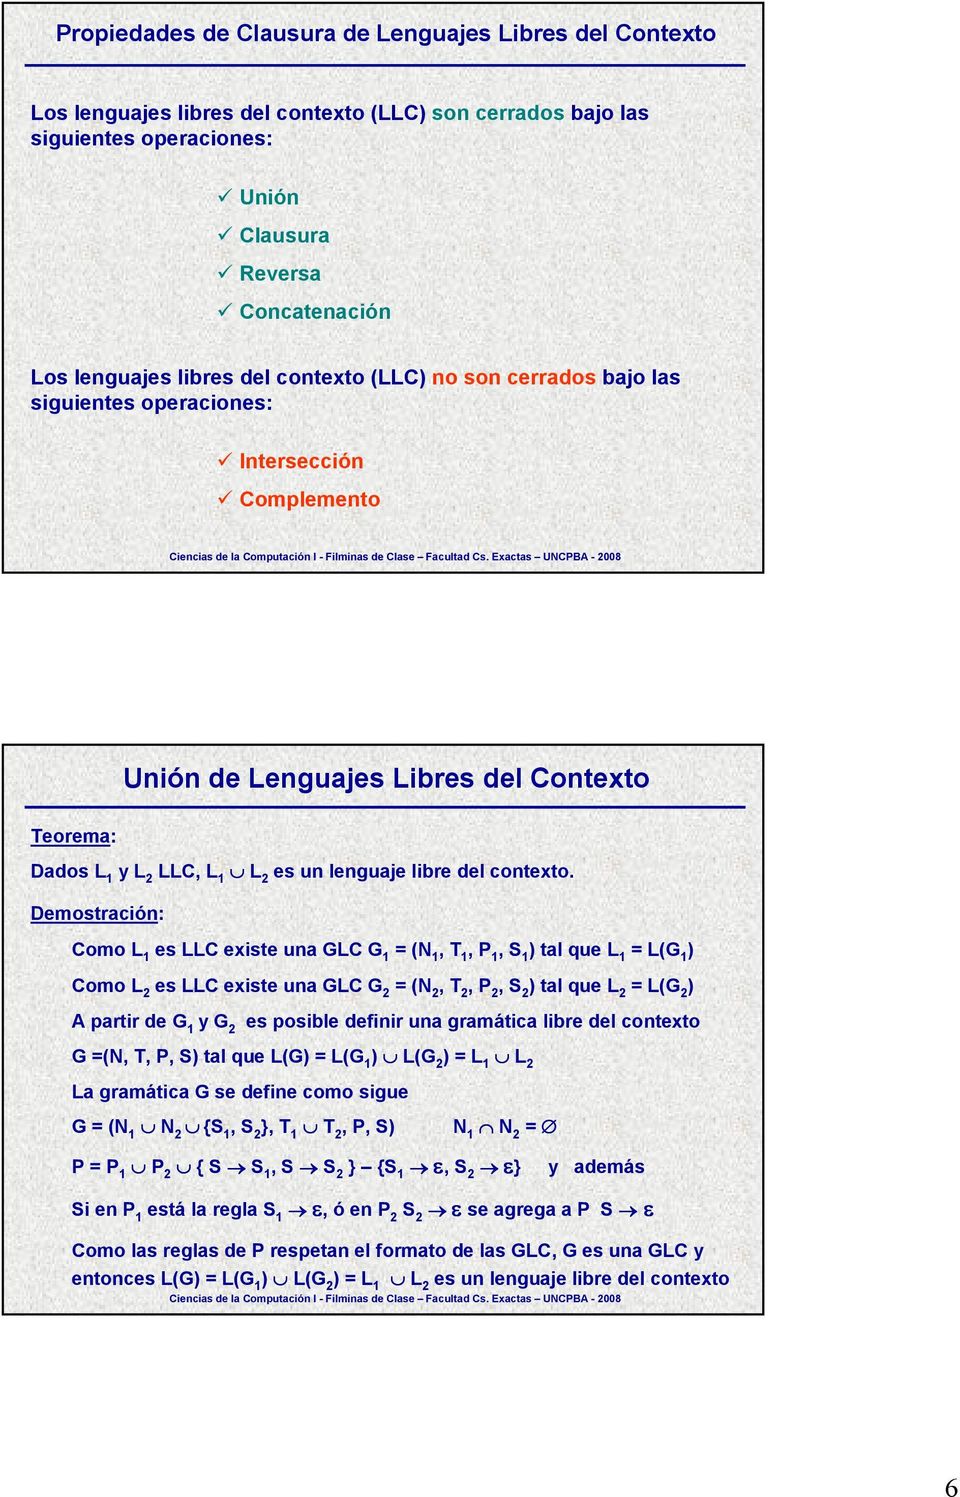 es LLC existe una GLC G 1 tal que L 1 es LLC existe una GLC G 2 = (N 2, T 2, P 2 tal que L 2 = L(G 2 y G 2 es posible definir una gramática libre del contexto G =(N, T, P, S tal que L(G L(G 2 = L 1